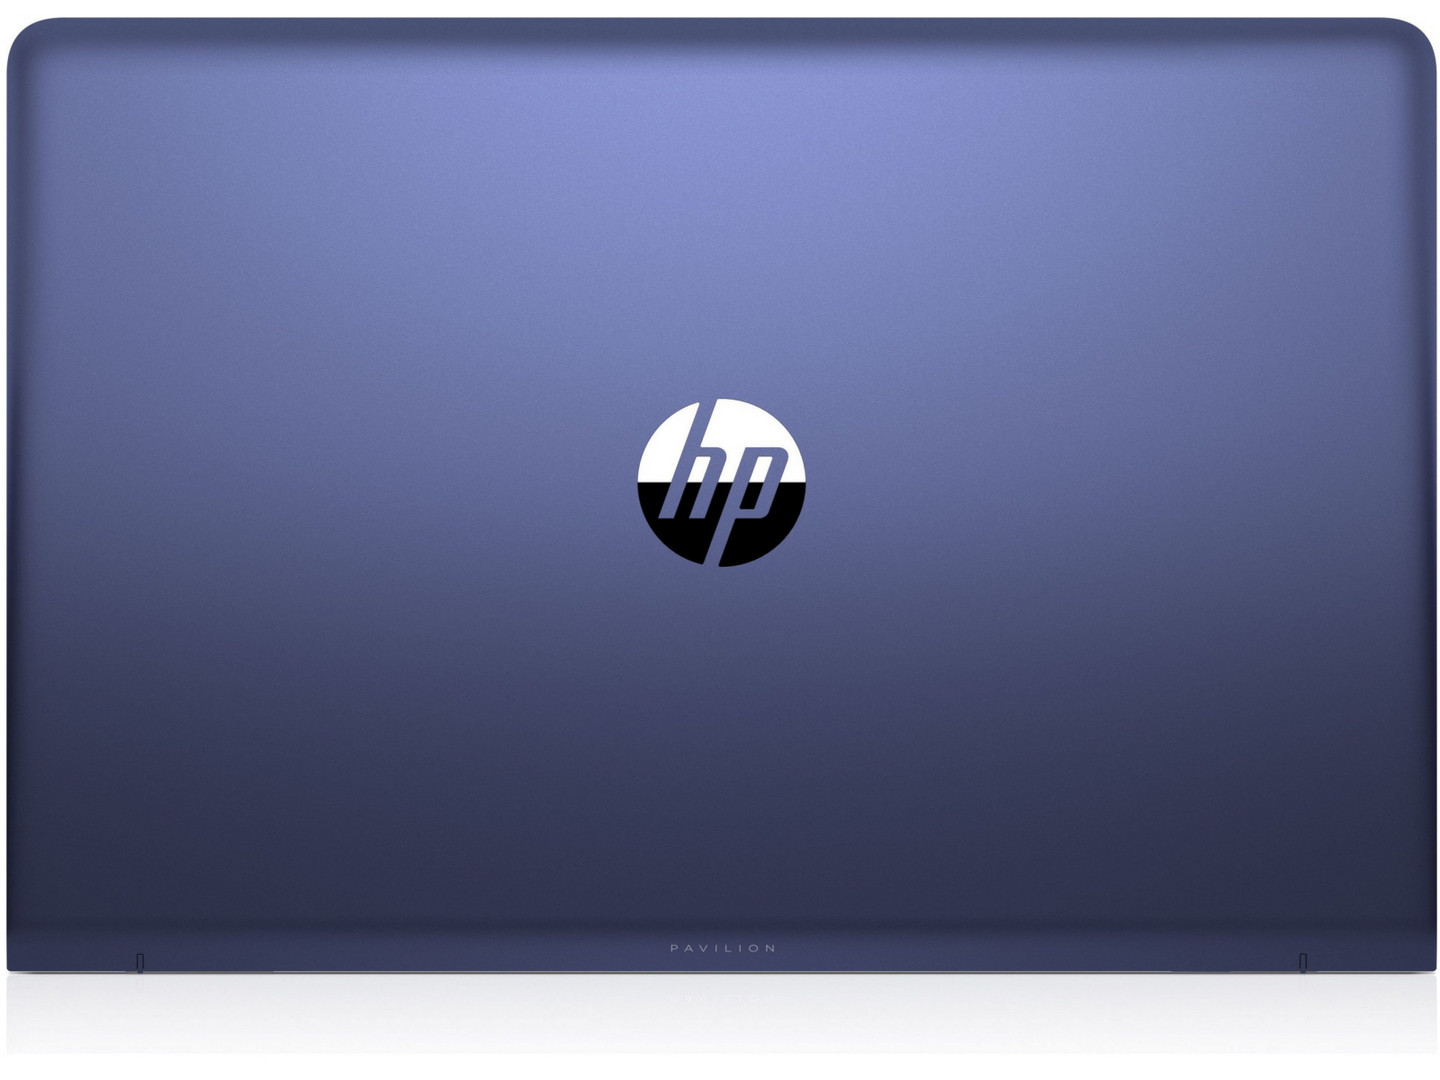 Đánh giá laptop HP Pavilion 15-cc107ng (i5-8250U, 940MX, FHD), Chuyên trang tư vấn laptop